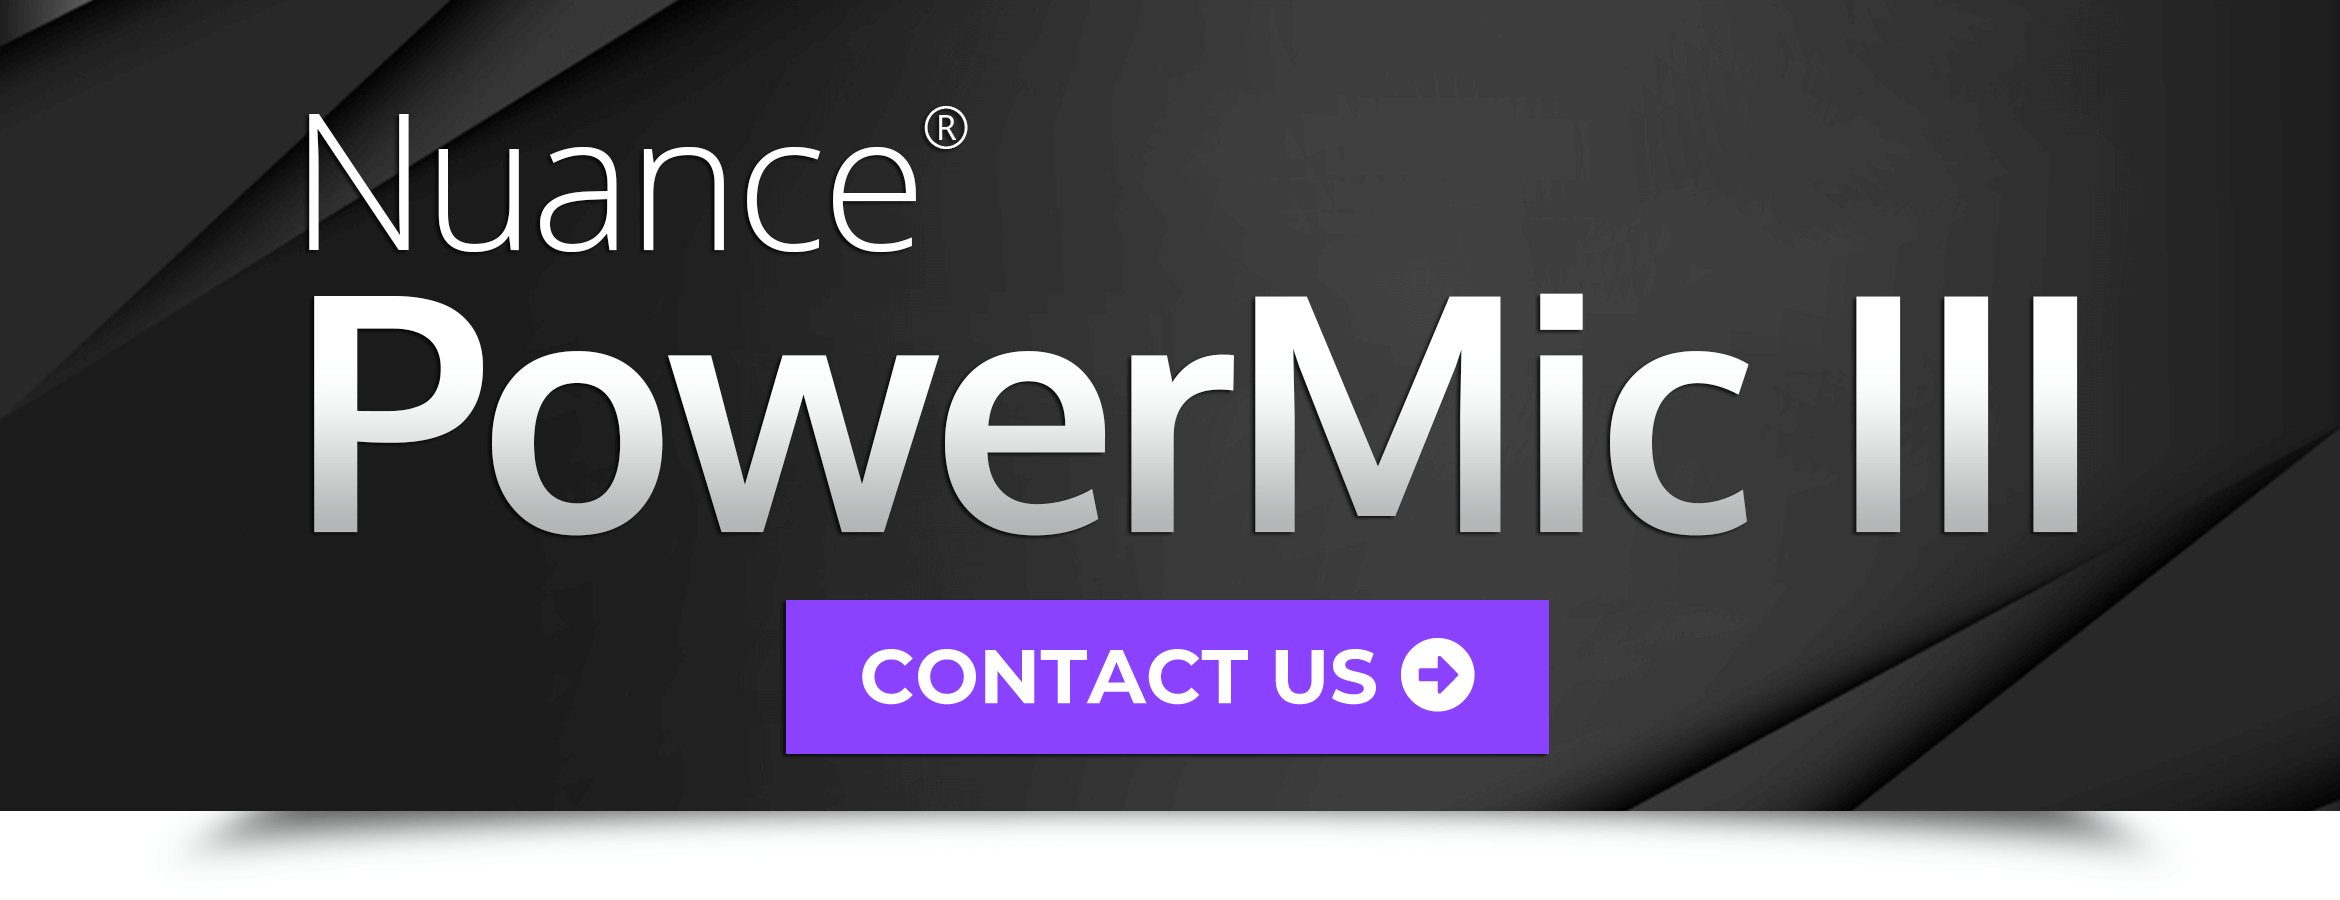 Nuance PowerMic III - Contact Us